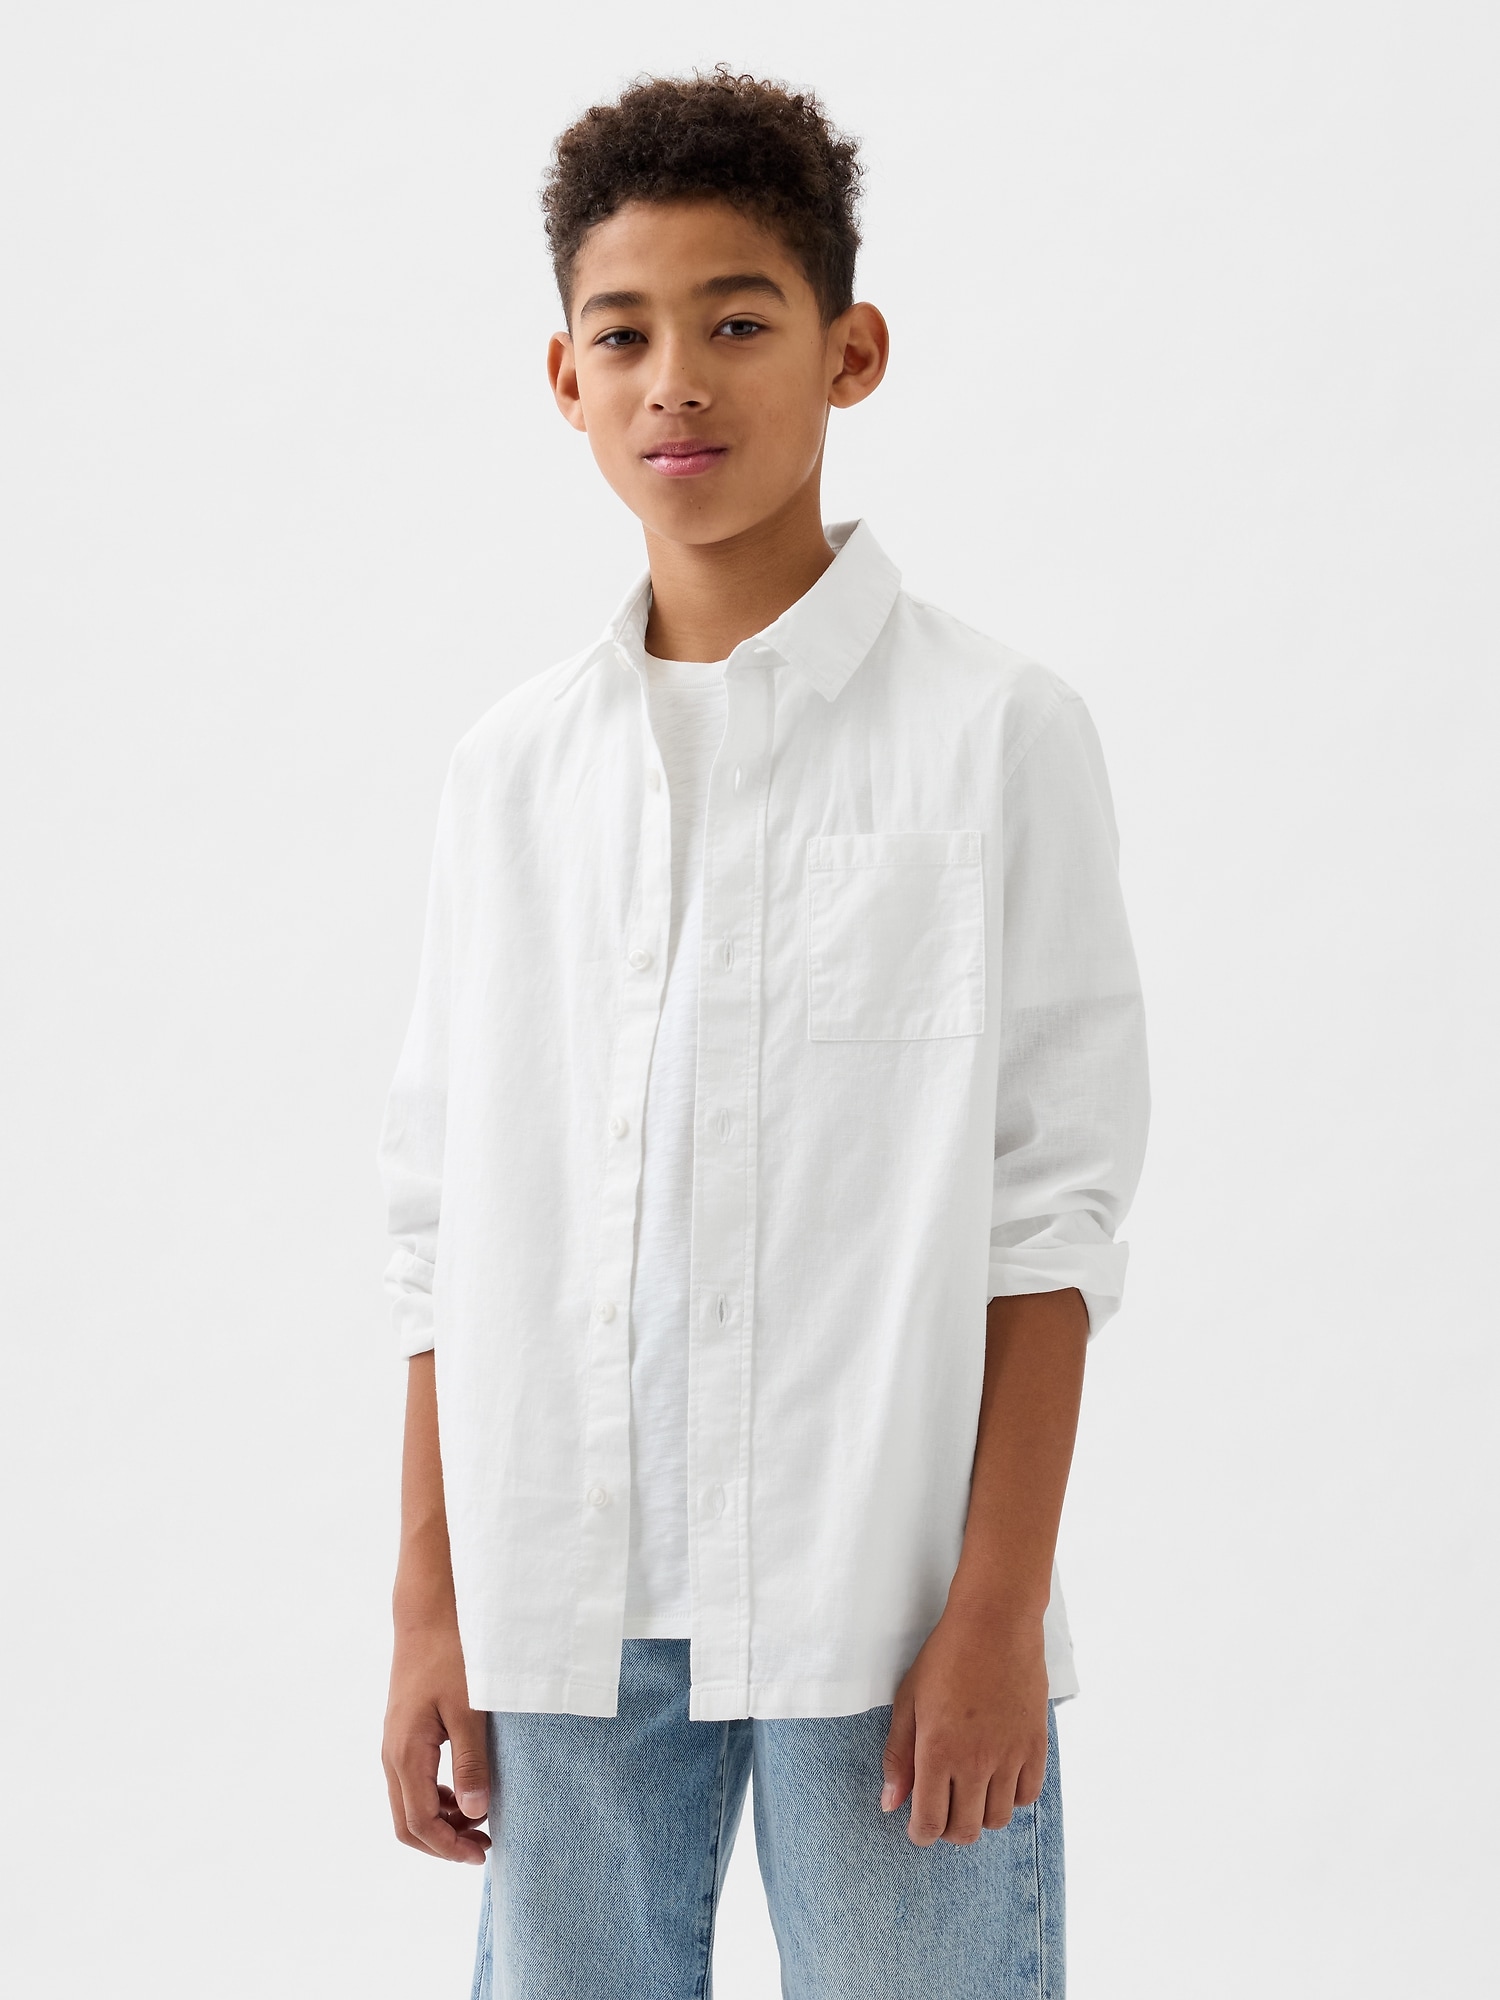 Natural Linen Kids' Shirt, European Linen Shirt for Boy or Girl, Sand Linen  Top for Children, Natural Linen Clothes for Children -  Israel